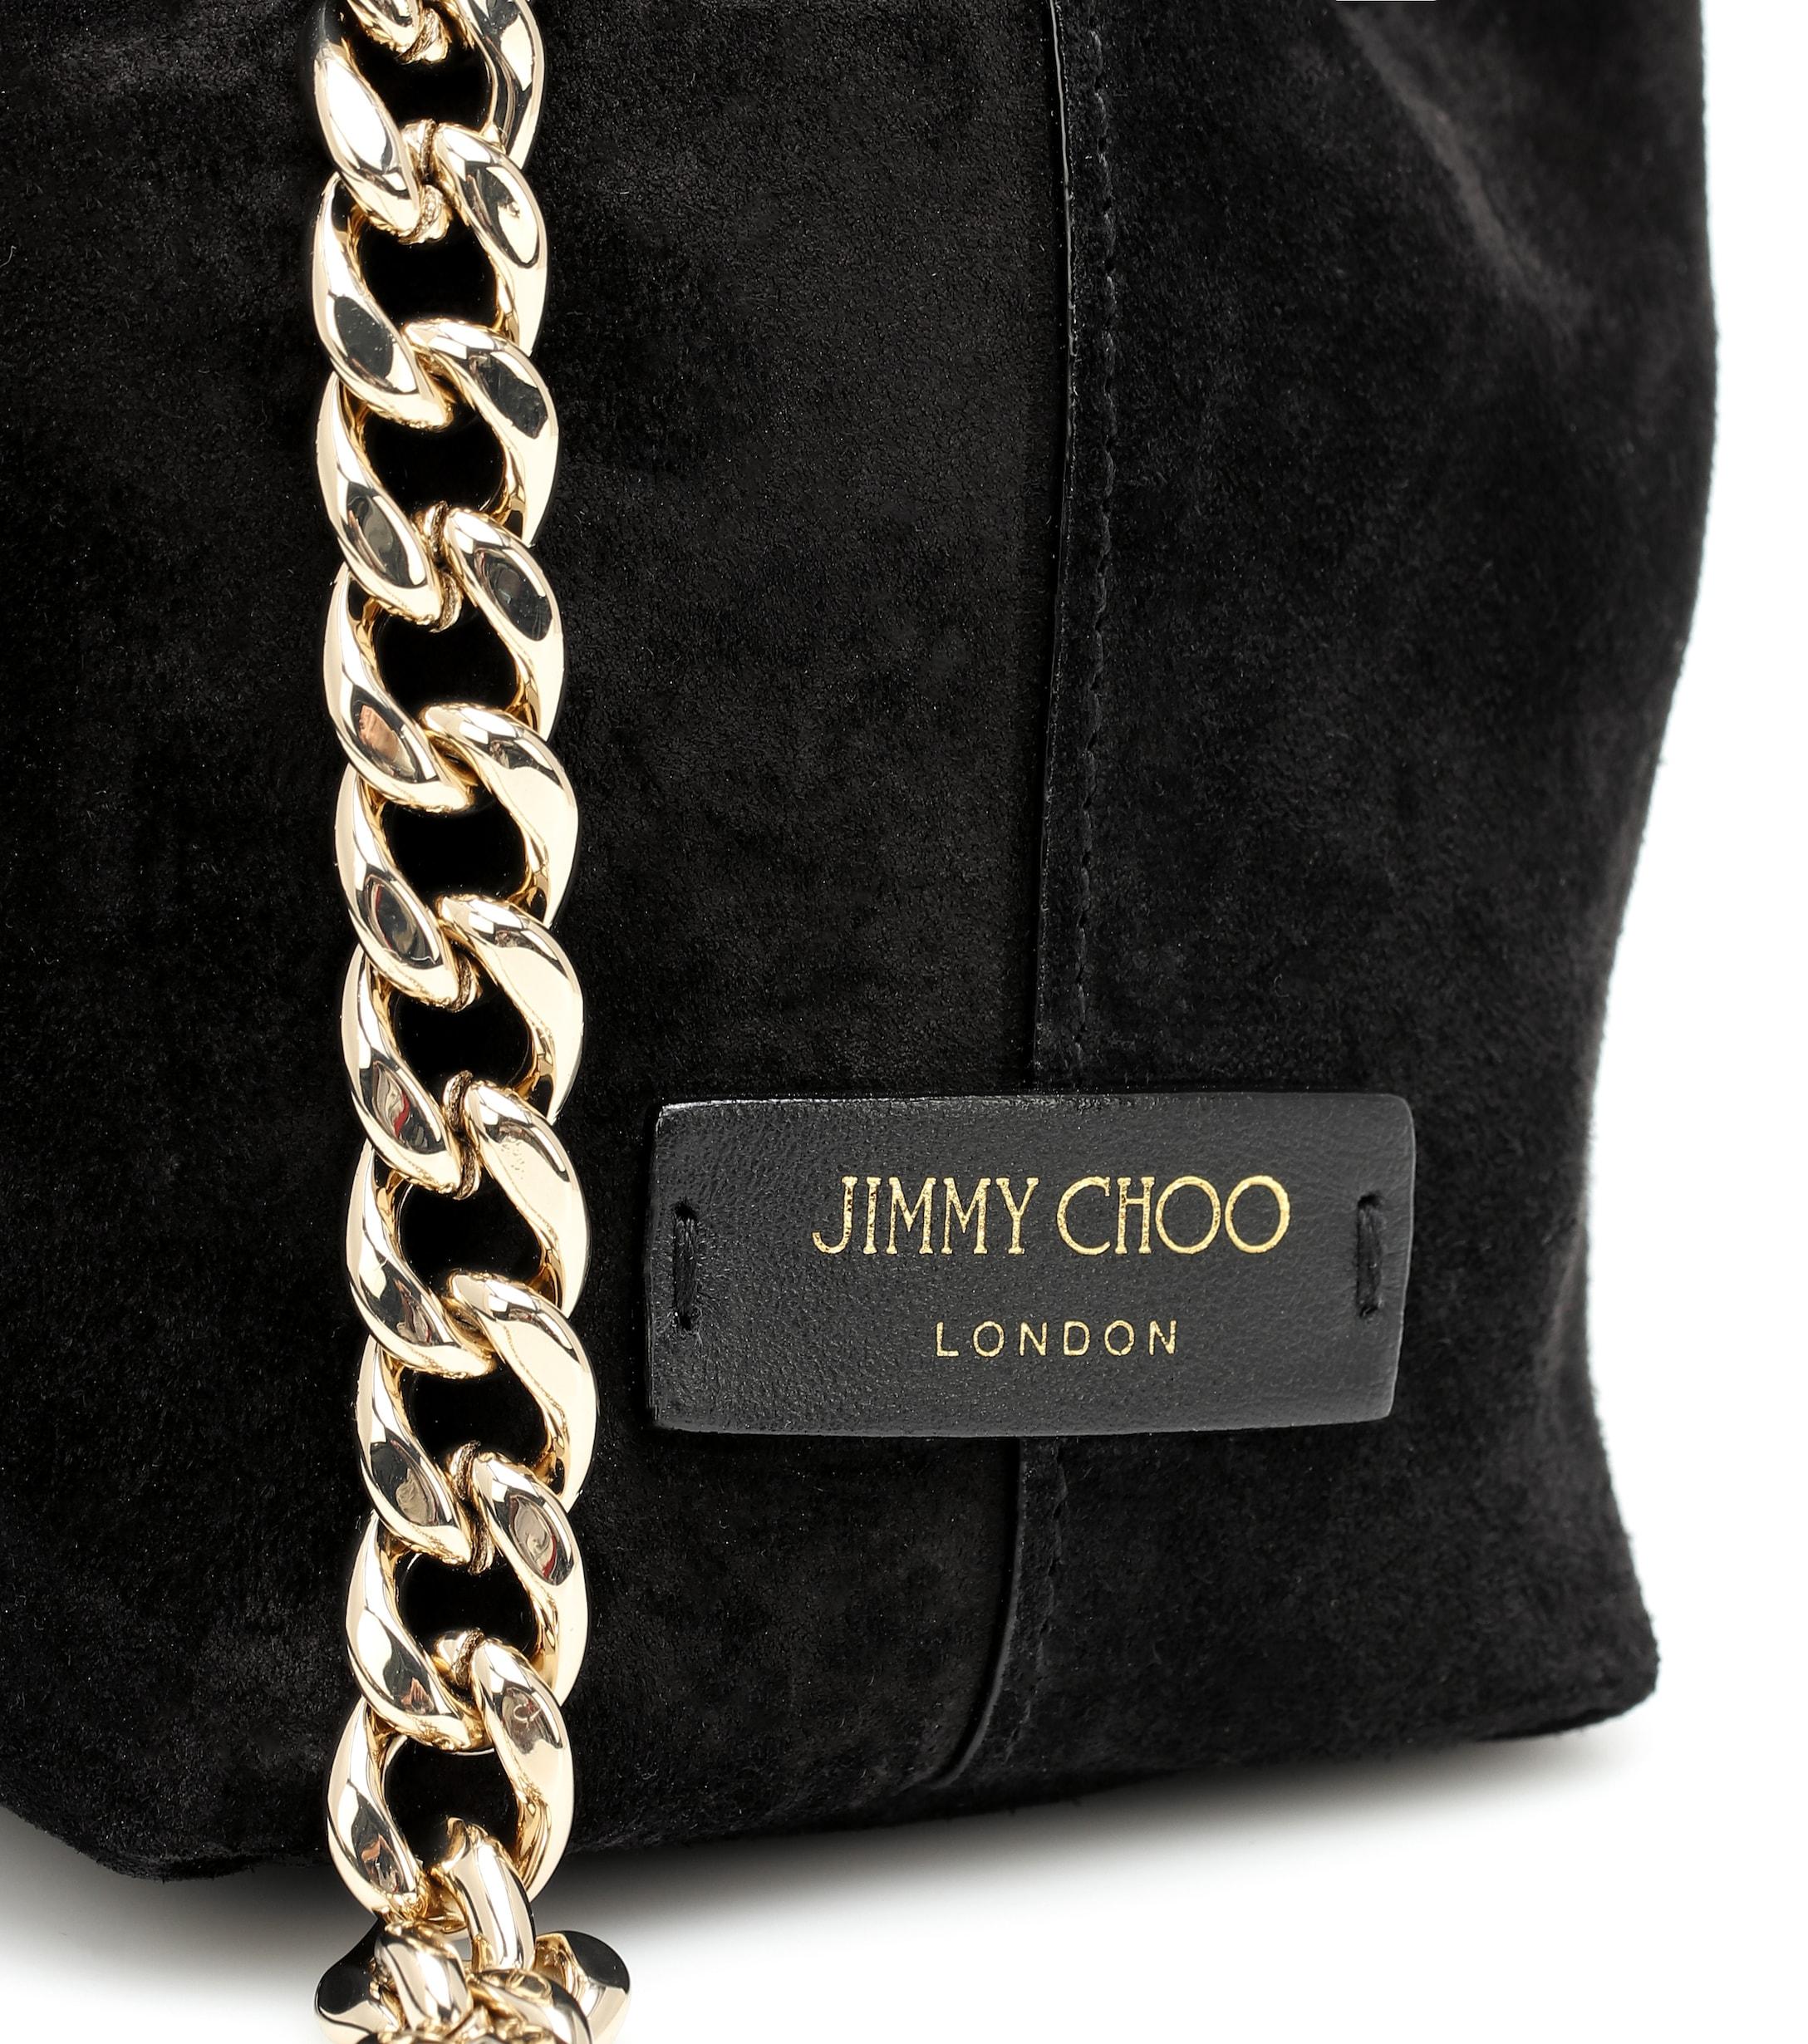 Jimmy Choo Leather Callie Tassel Drawstring Suede Hobo Bag in 